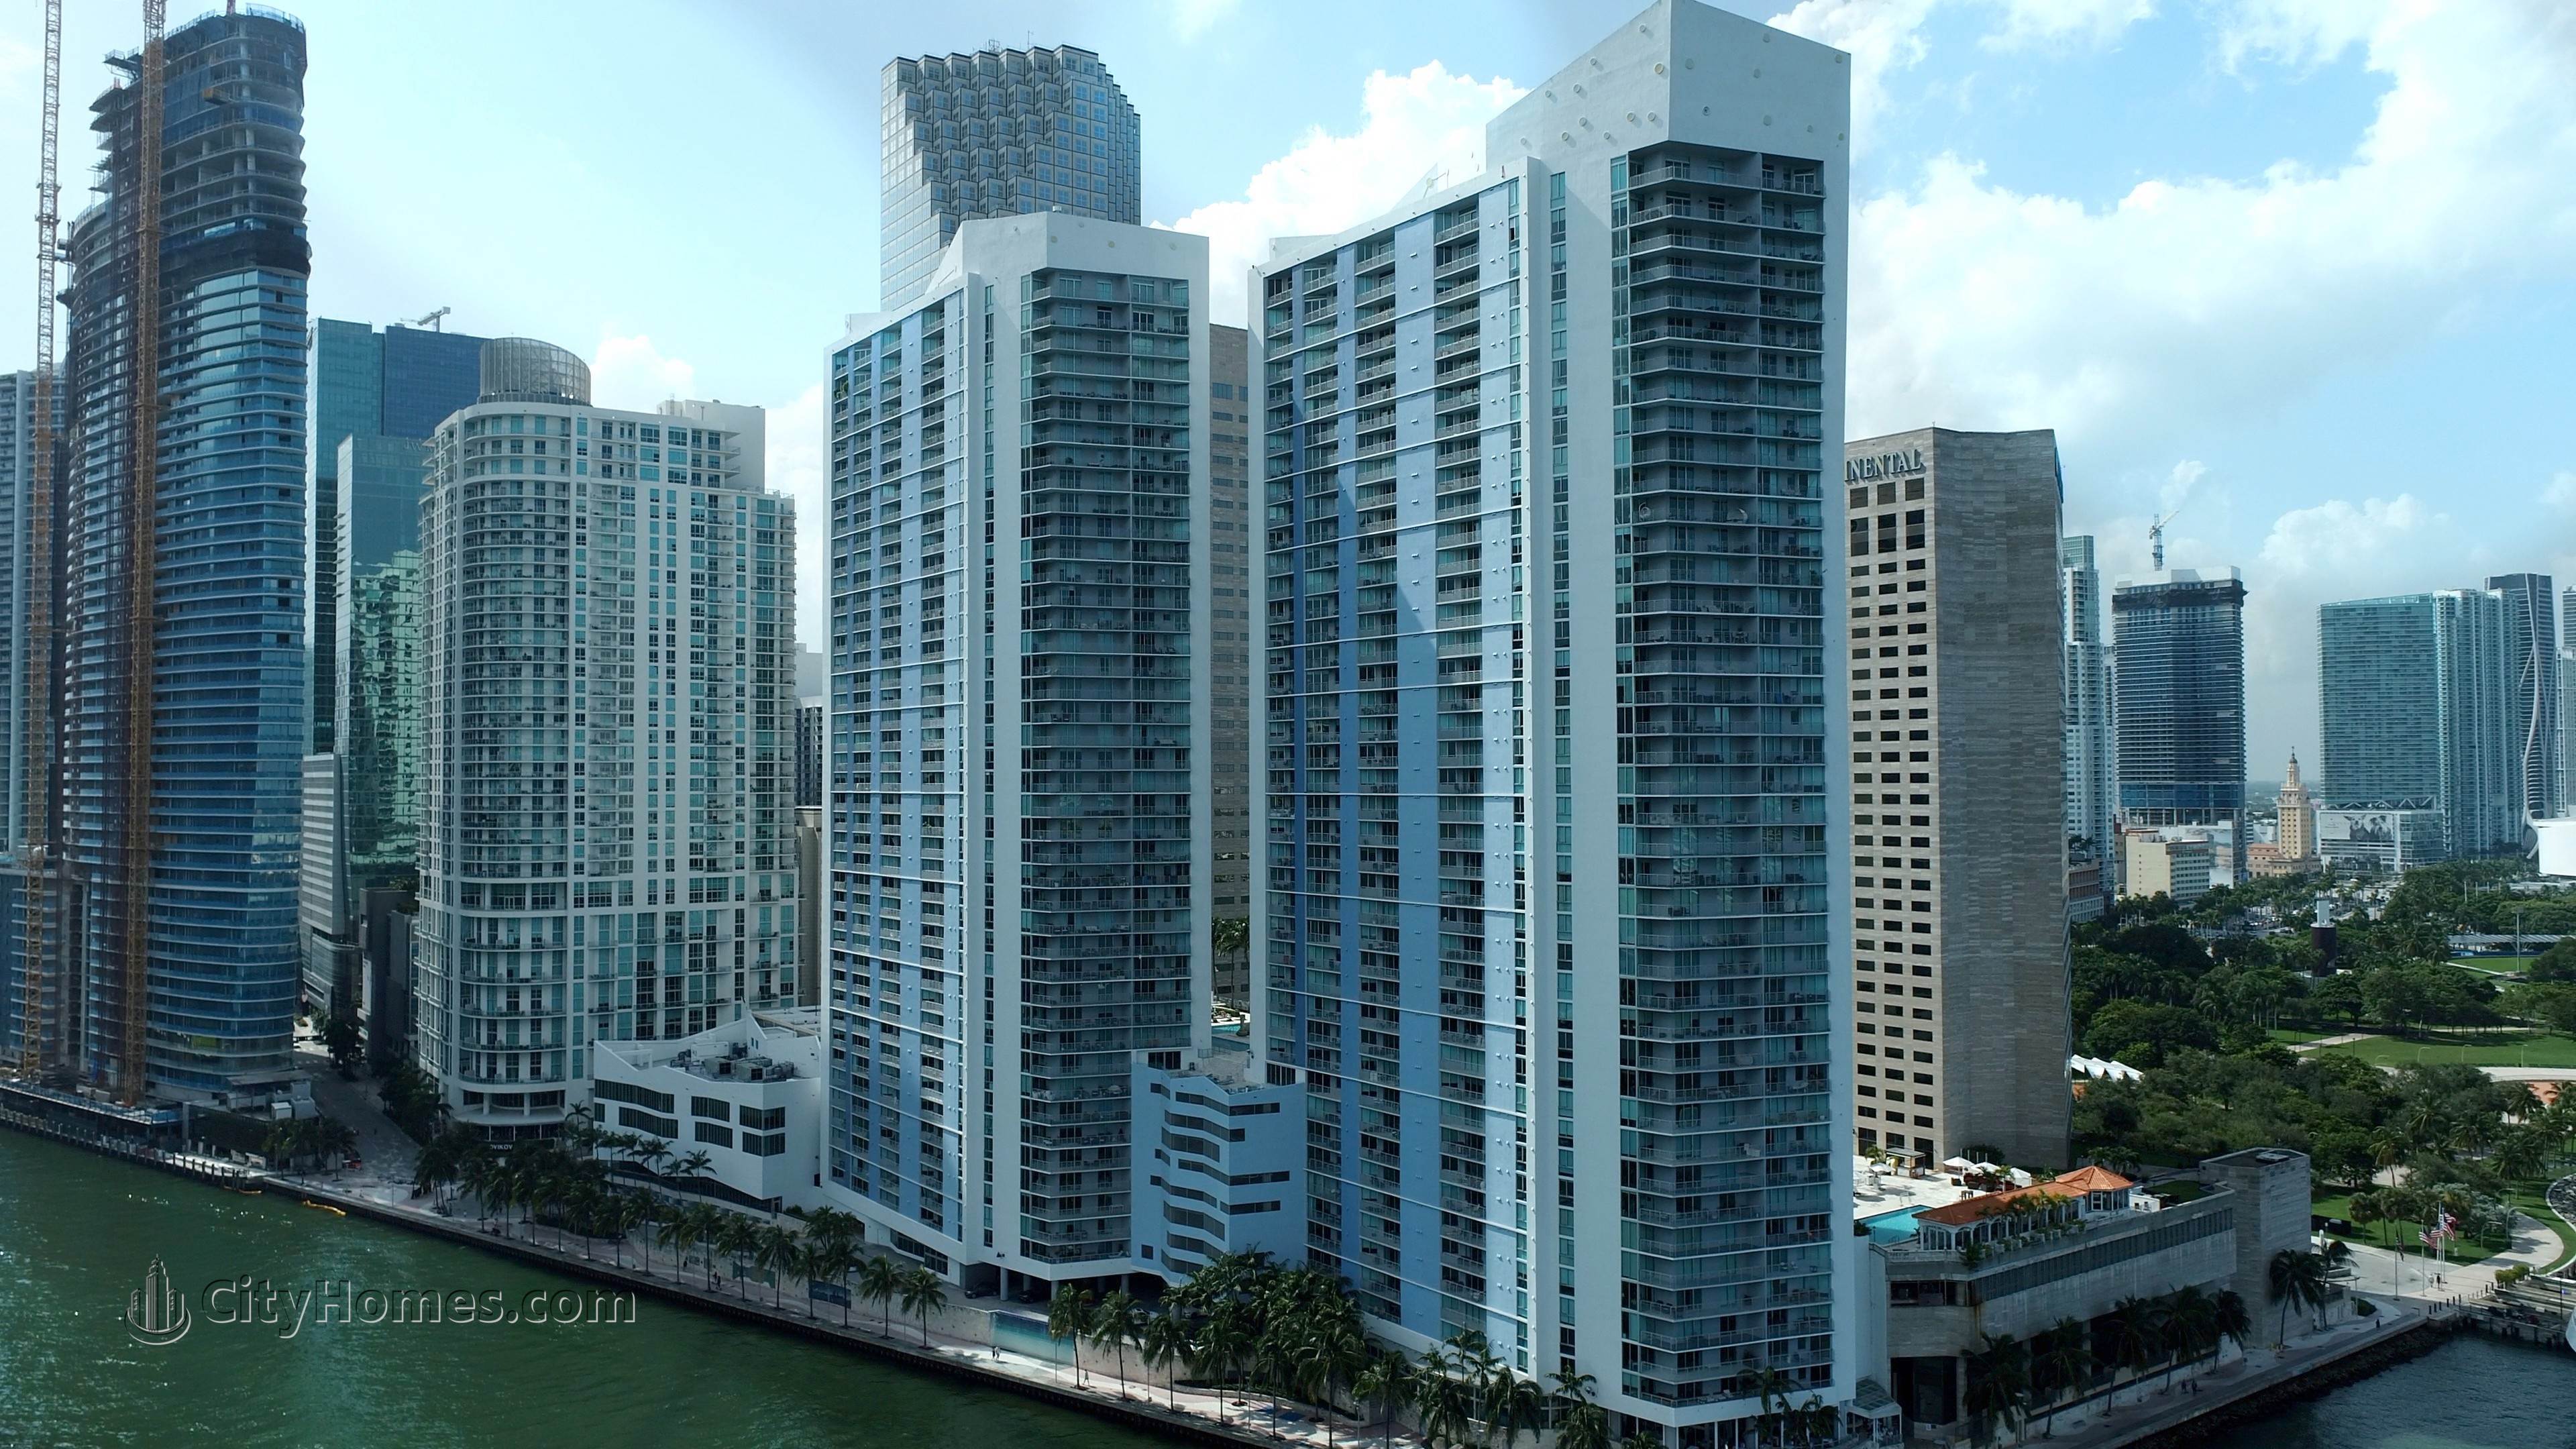 2. One Miami edificio a 325 And 335 S Biscayne Blvd, Miami, FL 33131